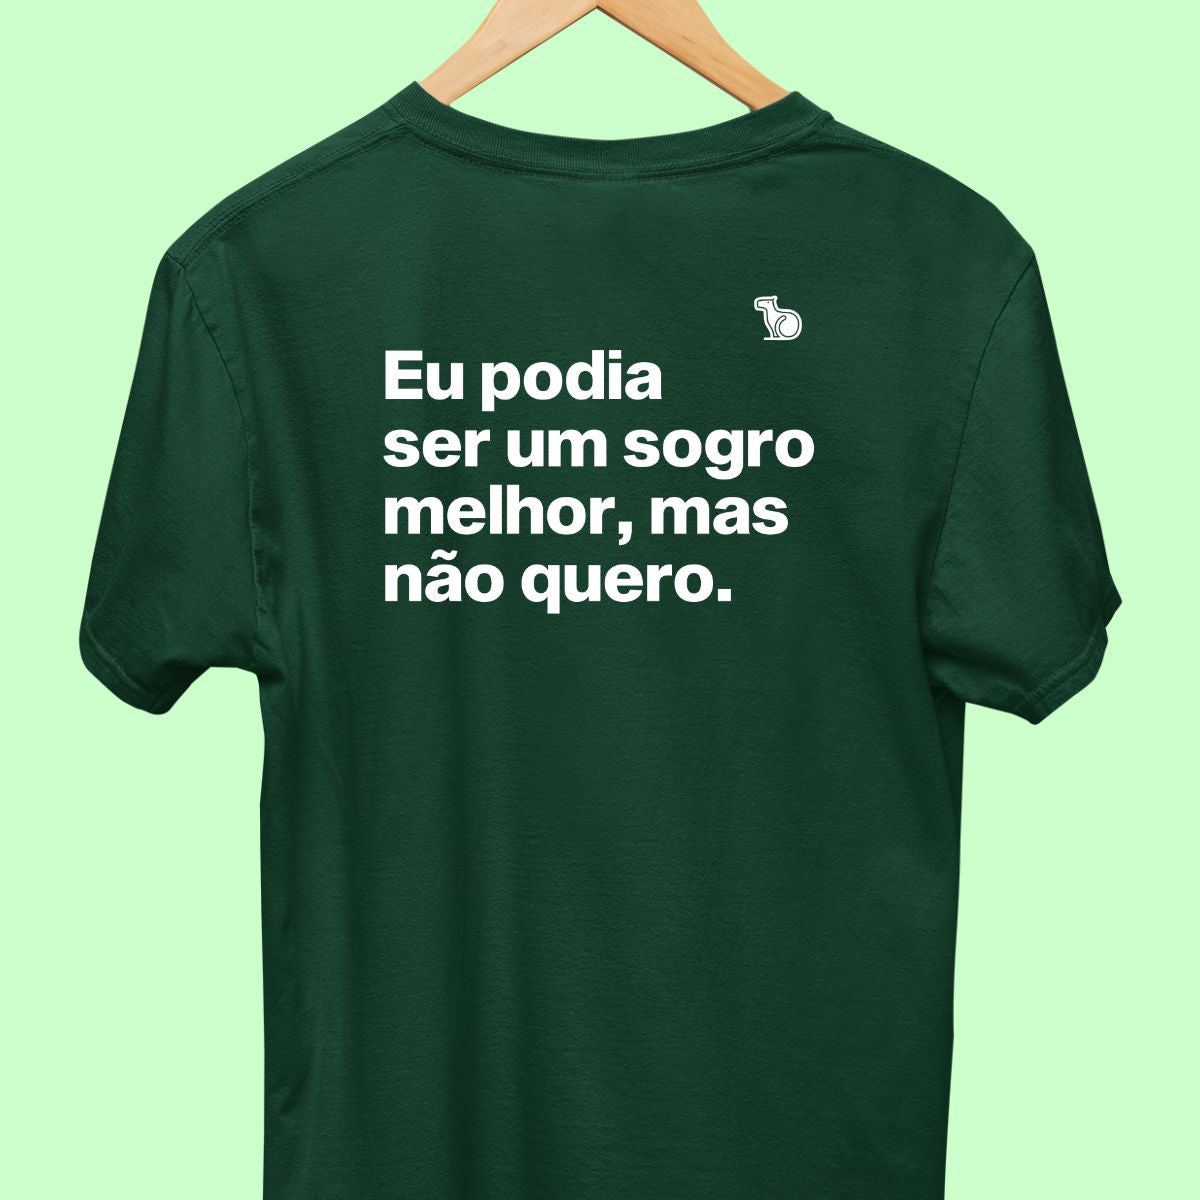 Camiseta com a frase "Eu podia ser um sogro melhor, mas não quero." masculina verde.